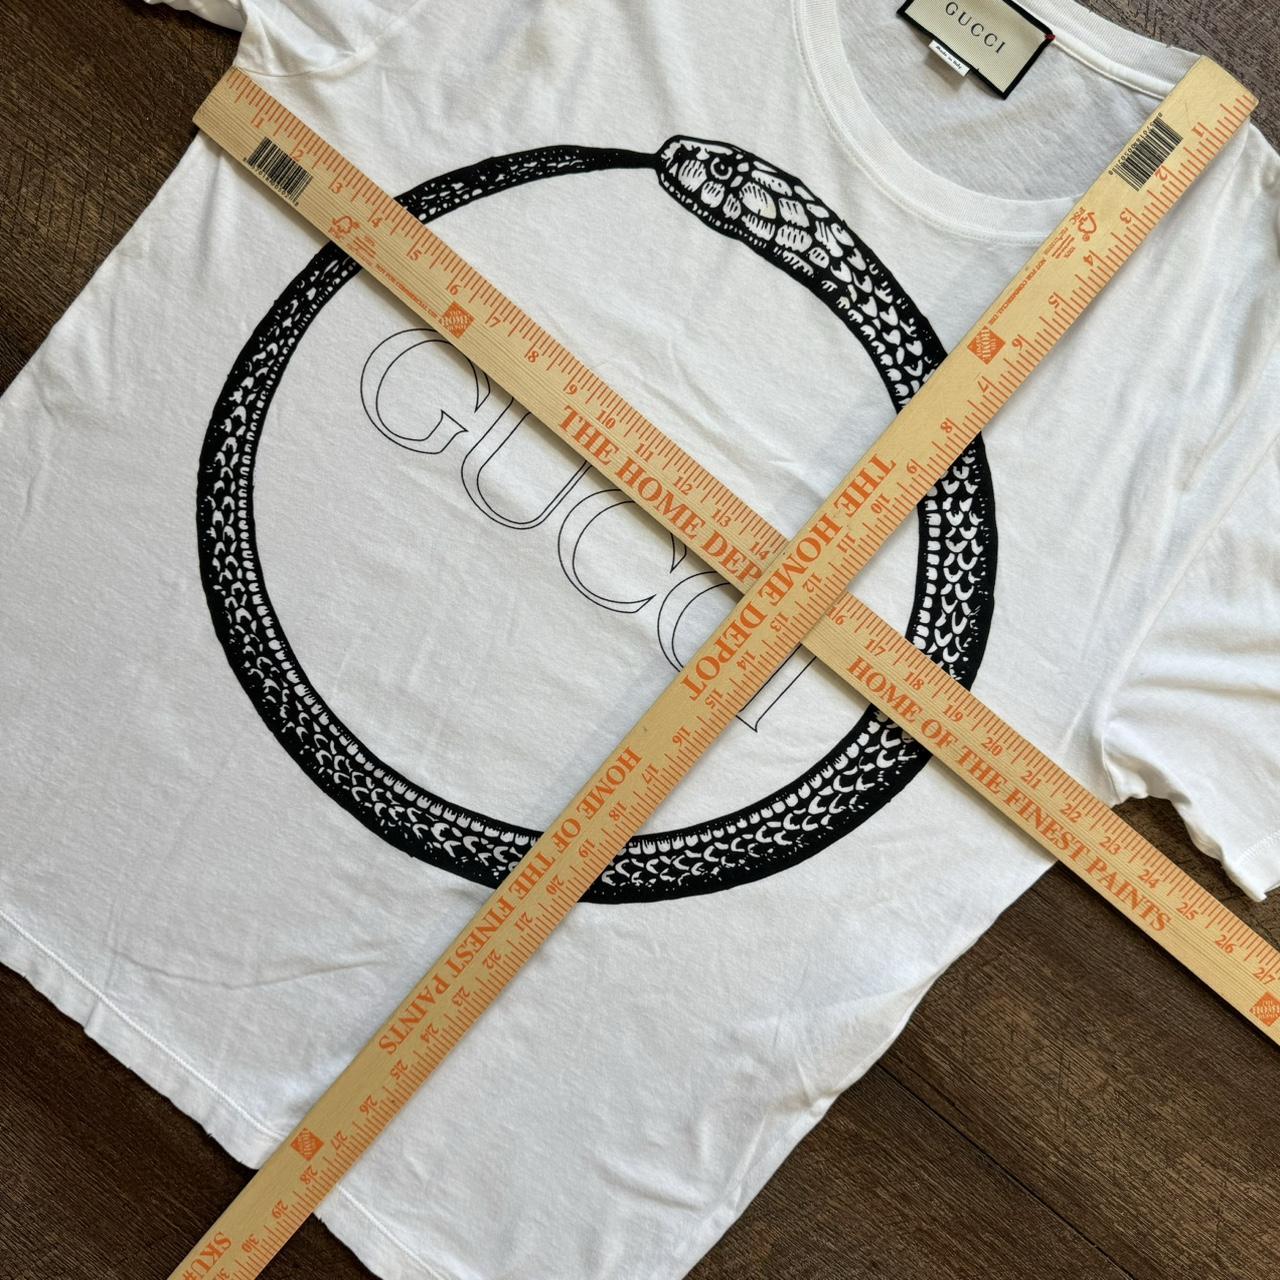 Gucci Men's White T-shirt (6)